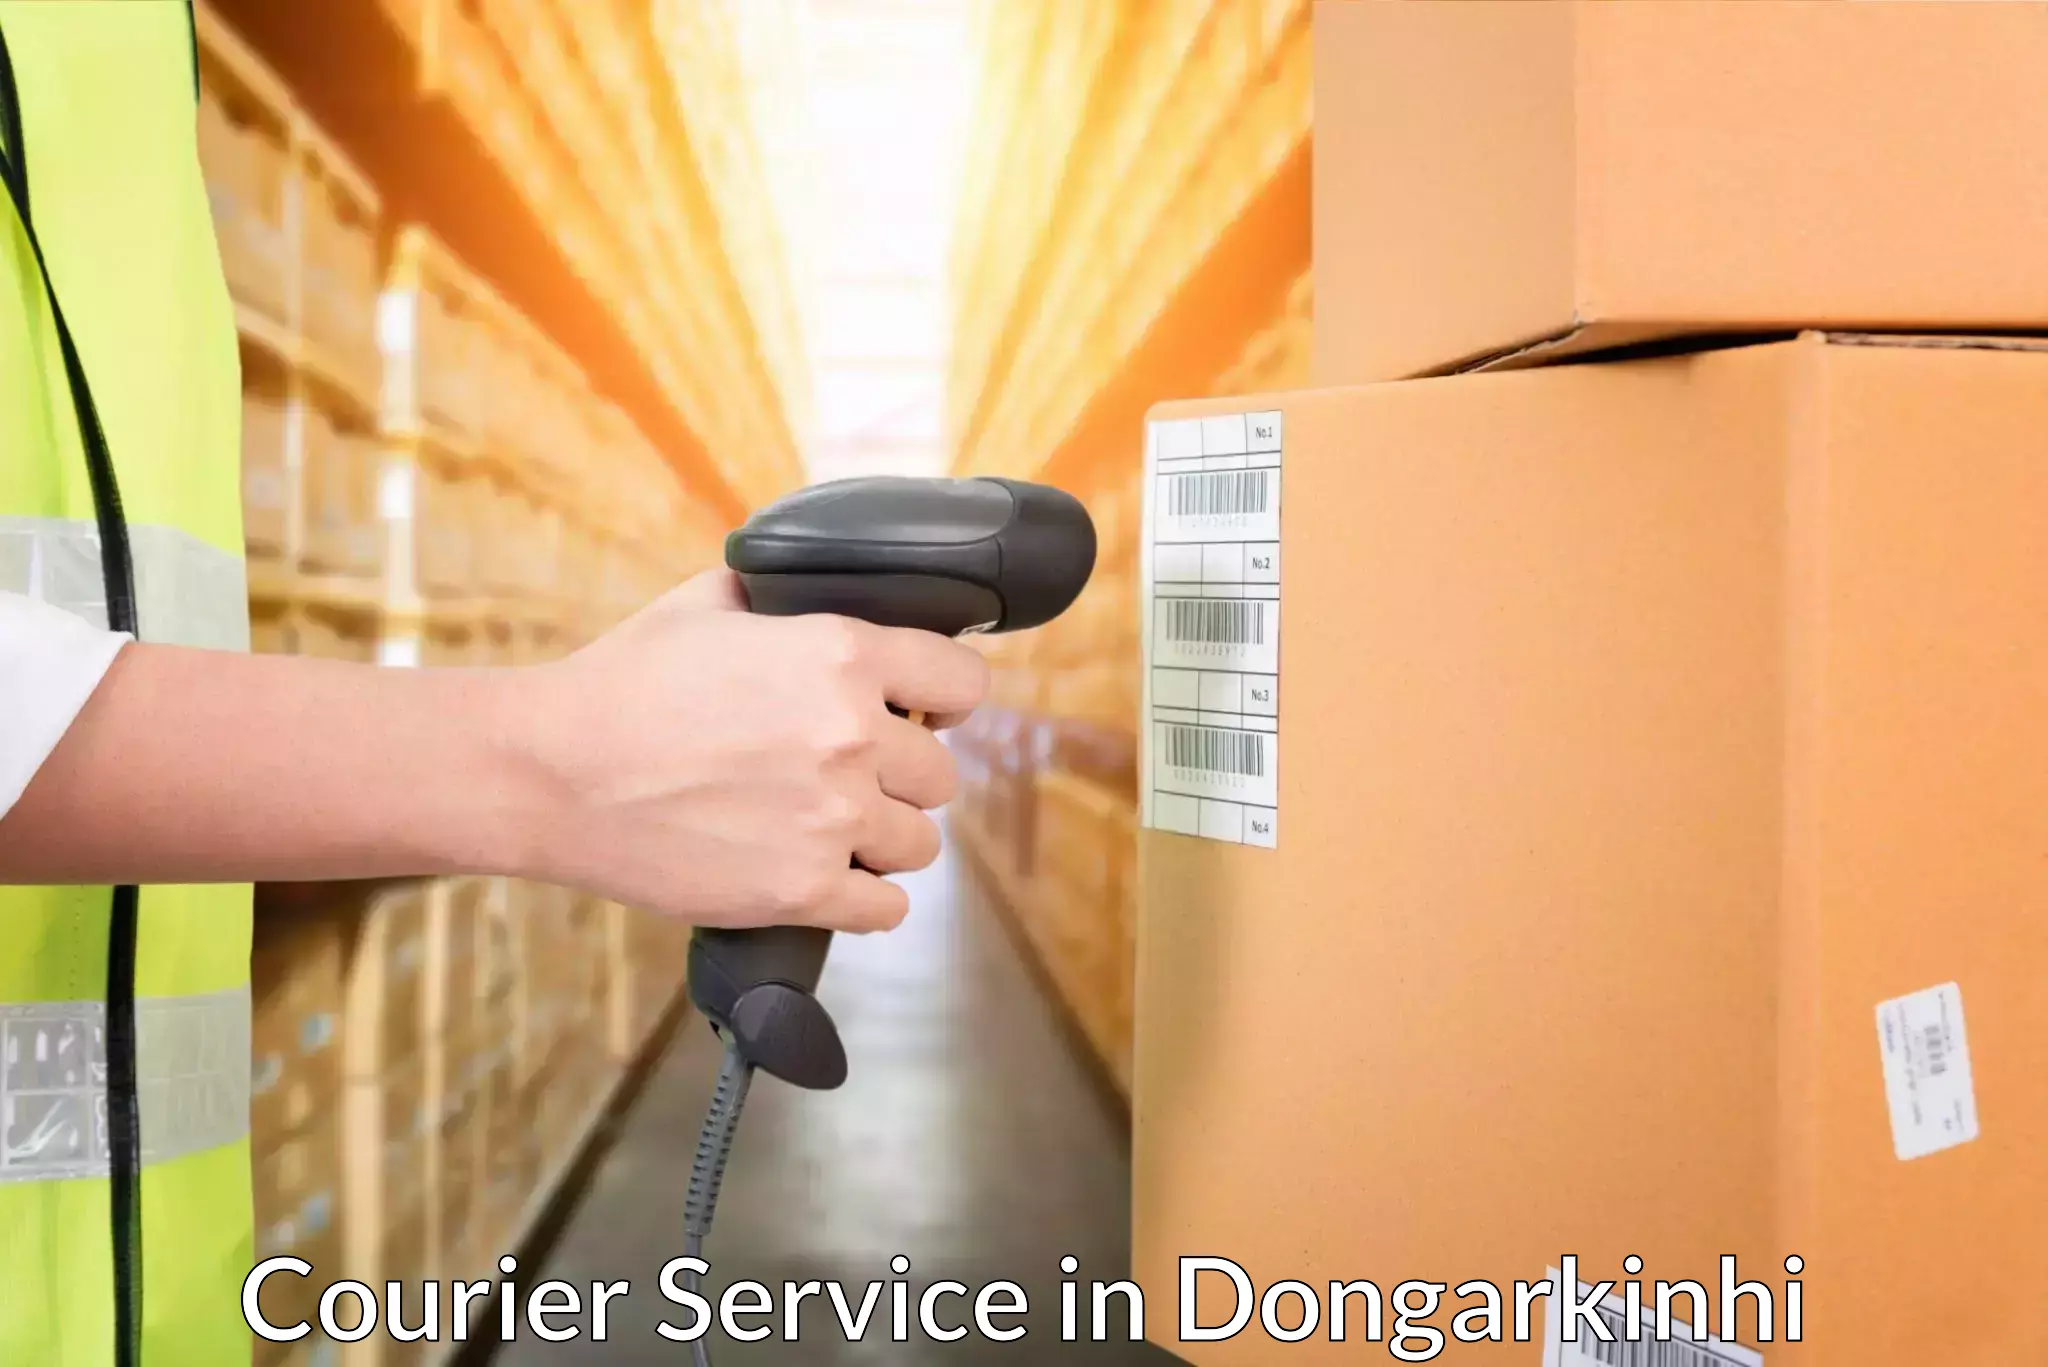 Customer-centric shipping in Dongarkinhi